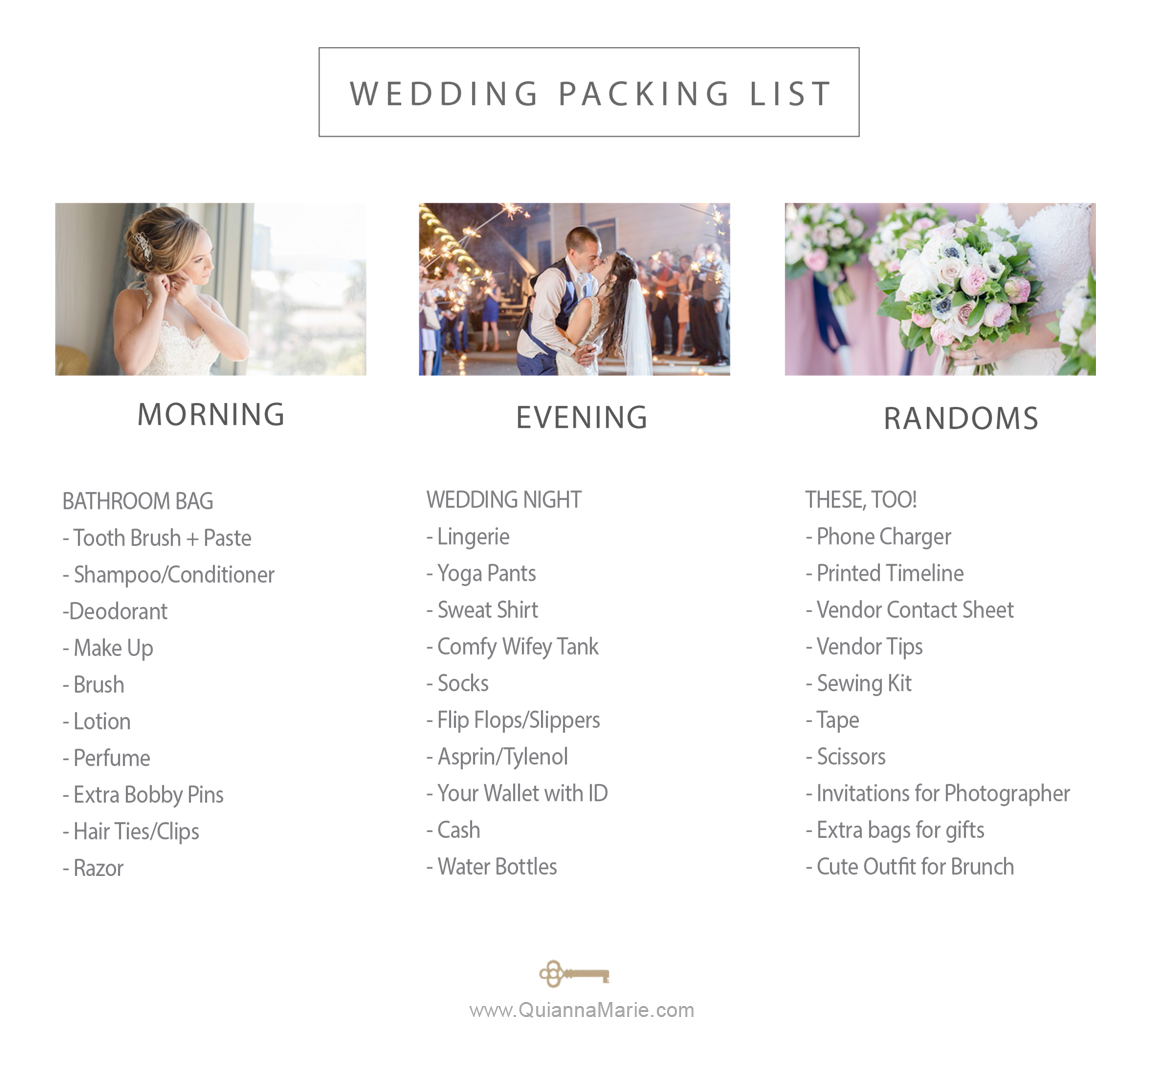 WeddingPacking List